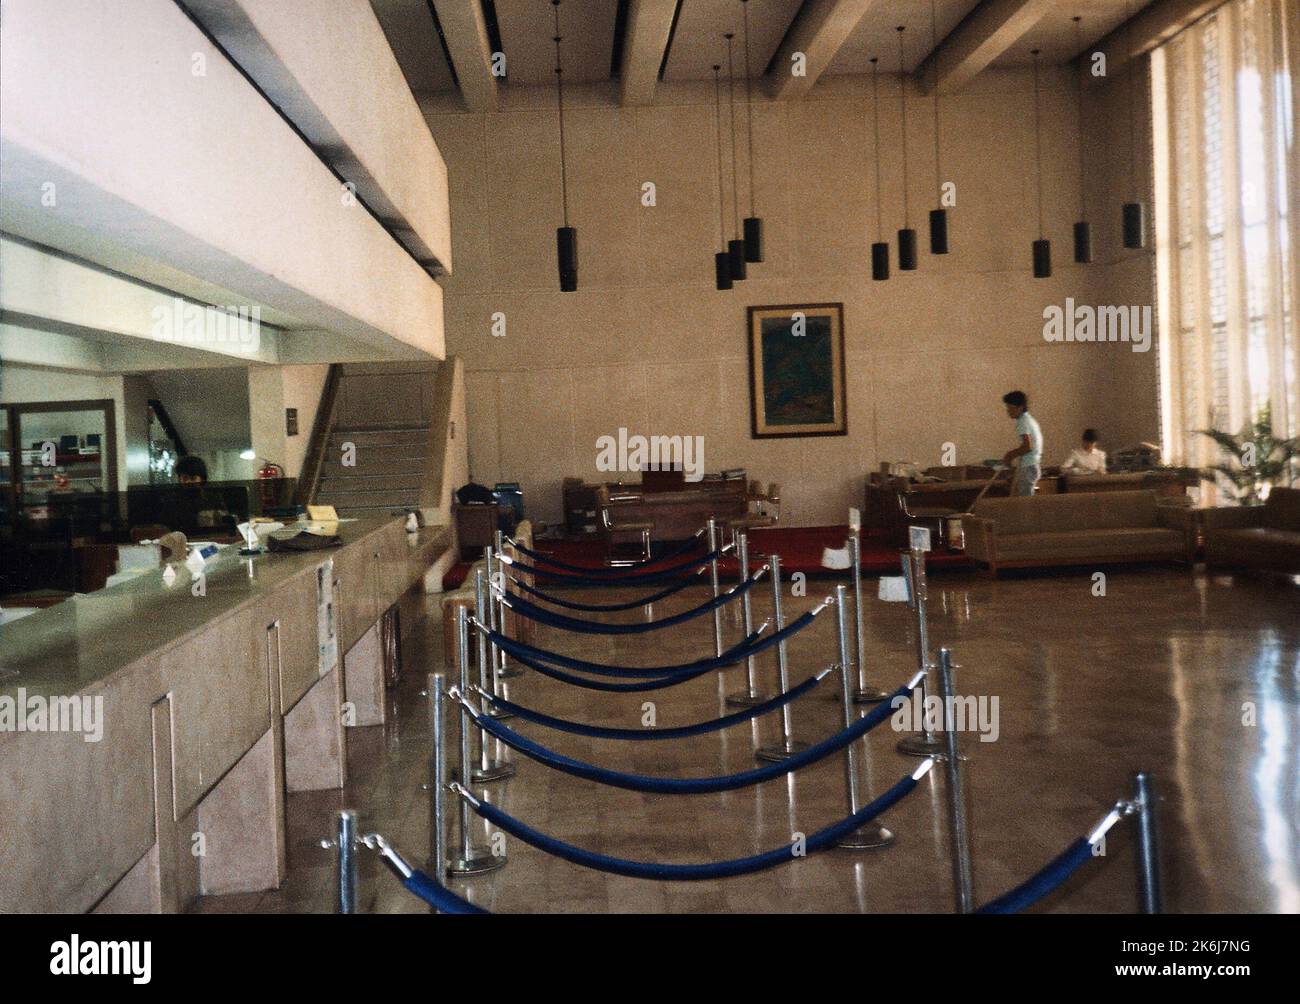 Cebu - Chancery Office Building - 1988, Vereinigte Staaten Fotos im Zusammenhang mit Botschaften, Konsulaten und anderen Überseegebäuden Stockfoto